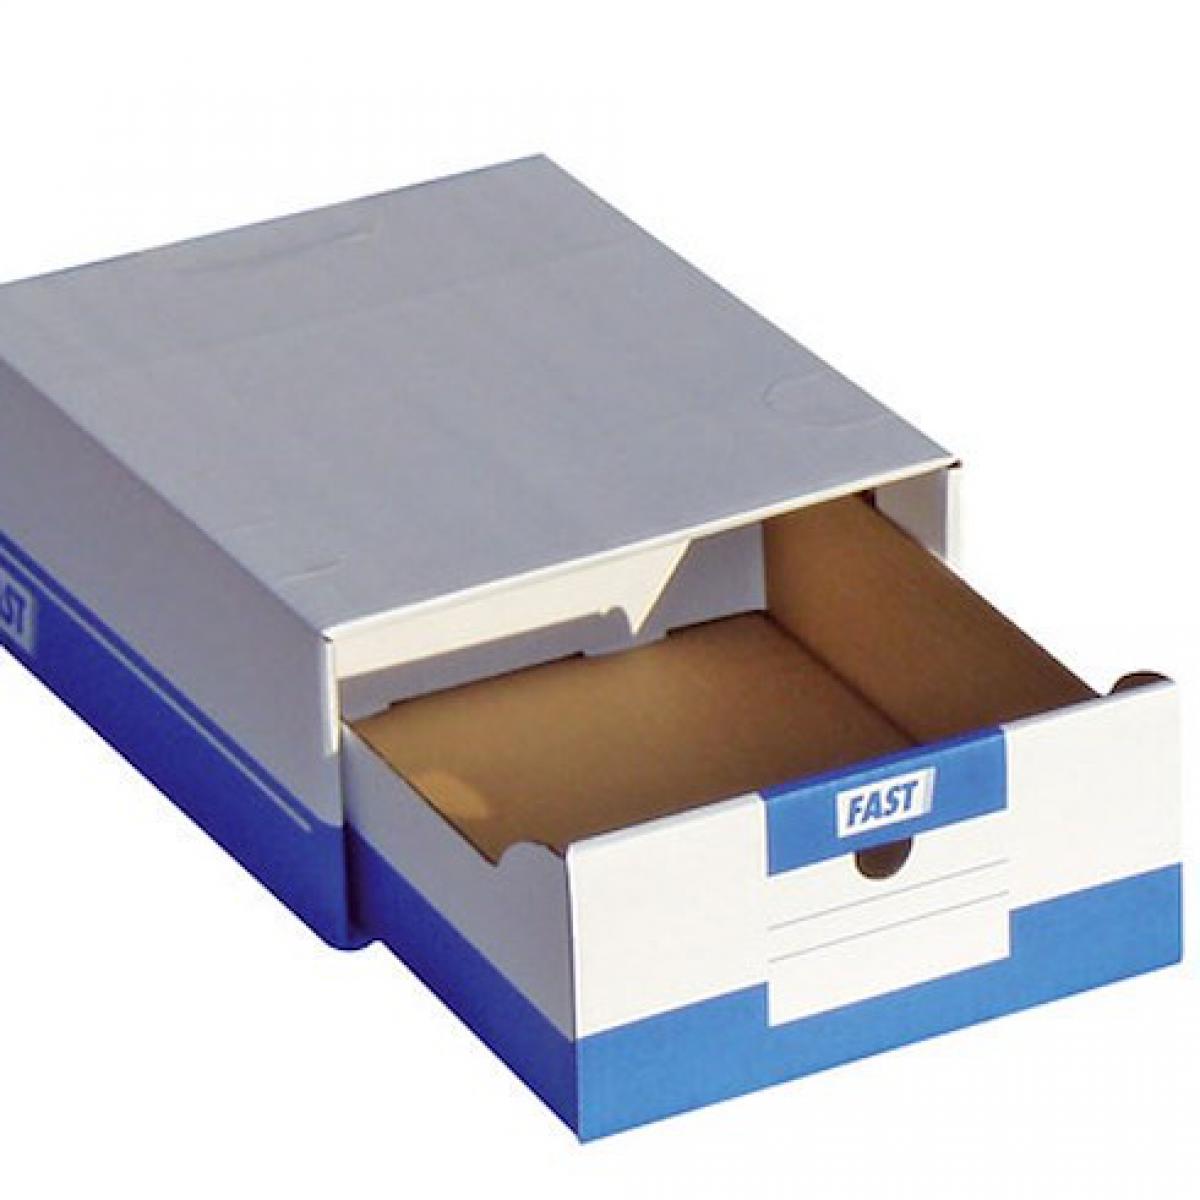 Fast - Boîte à archives A4 blanche-bleue avec tiroir - Lot de 10 - Accessoires Bureau